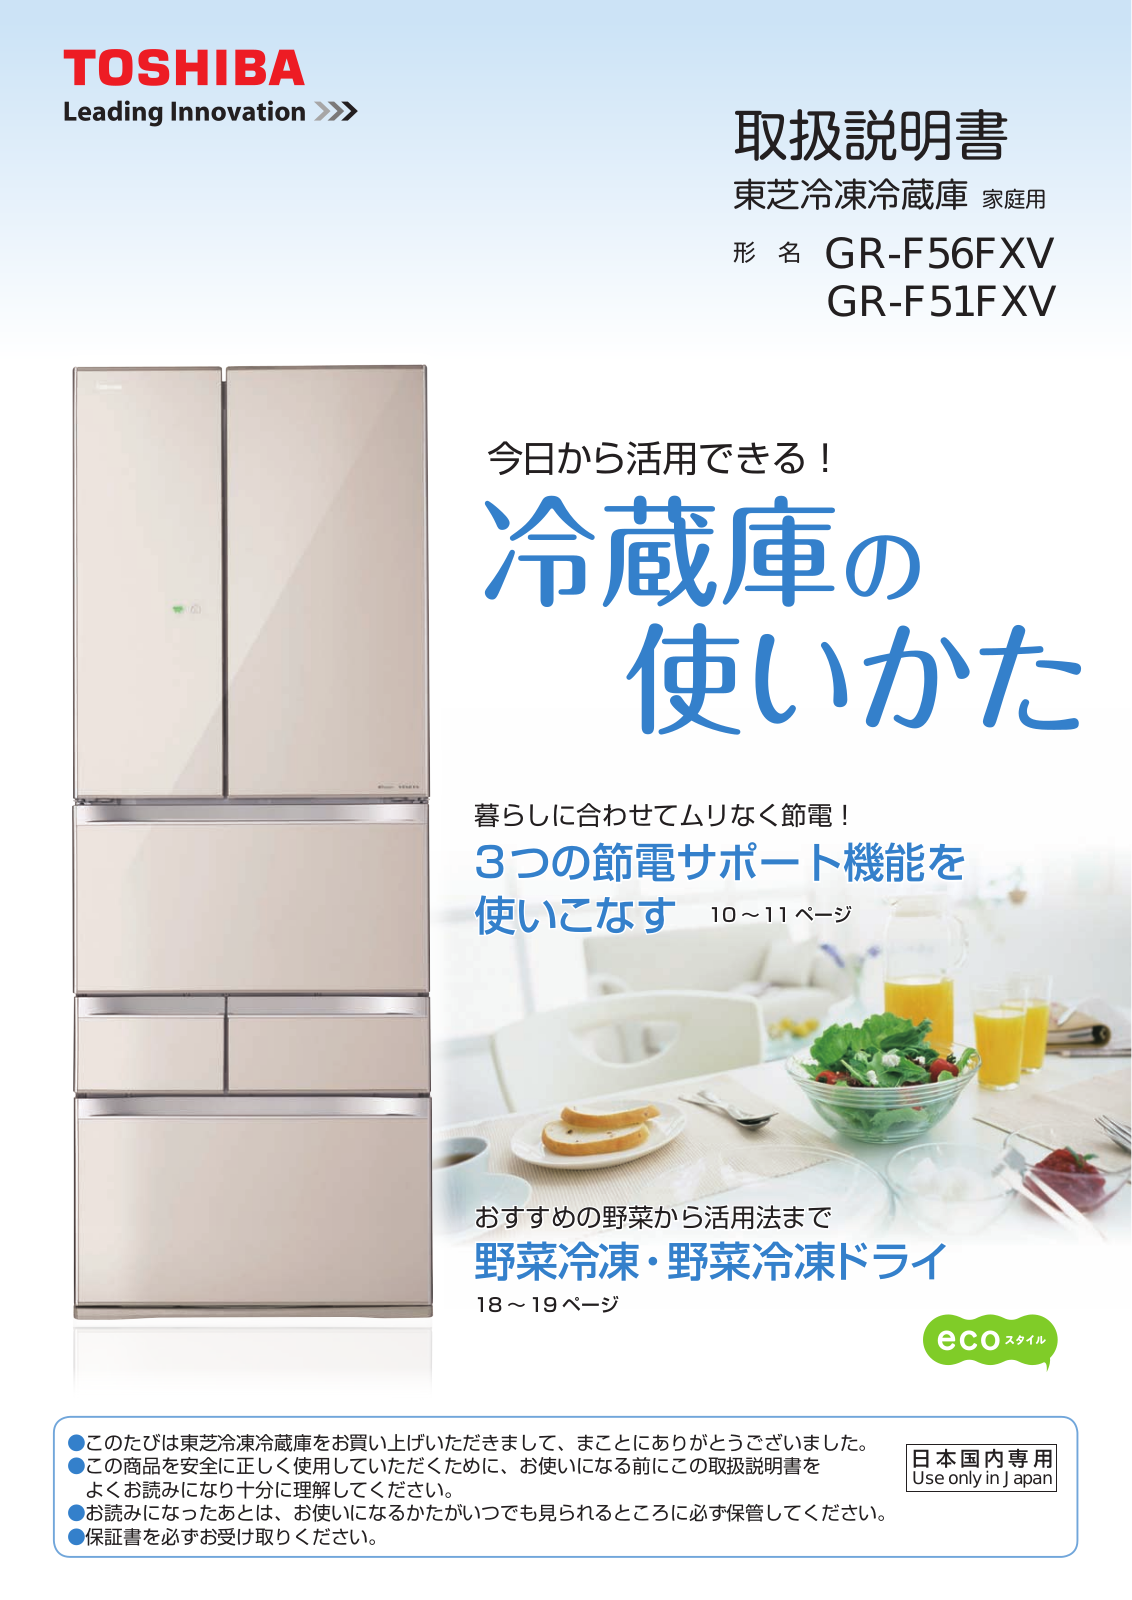 TOSHIBA GR-F51FXV, GR-F56FXV User guide